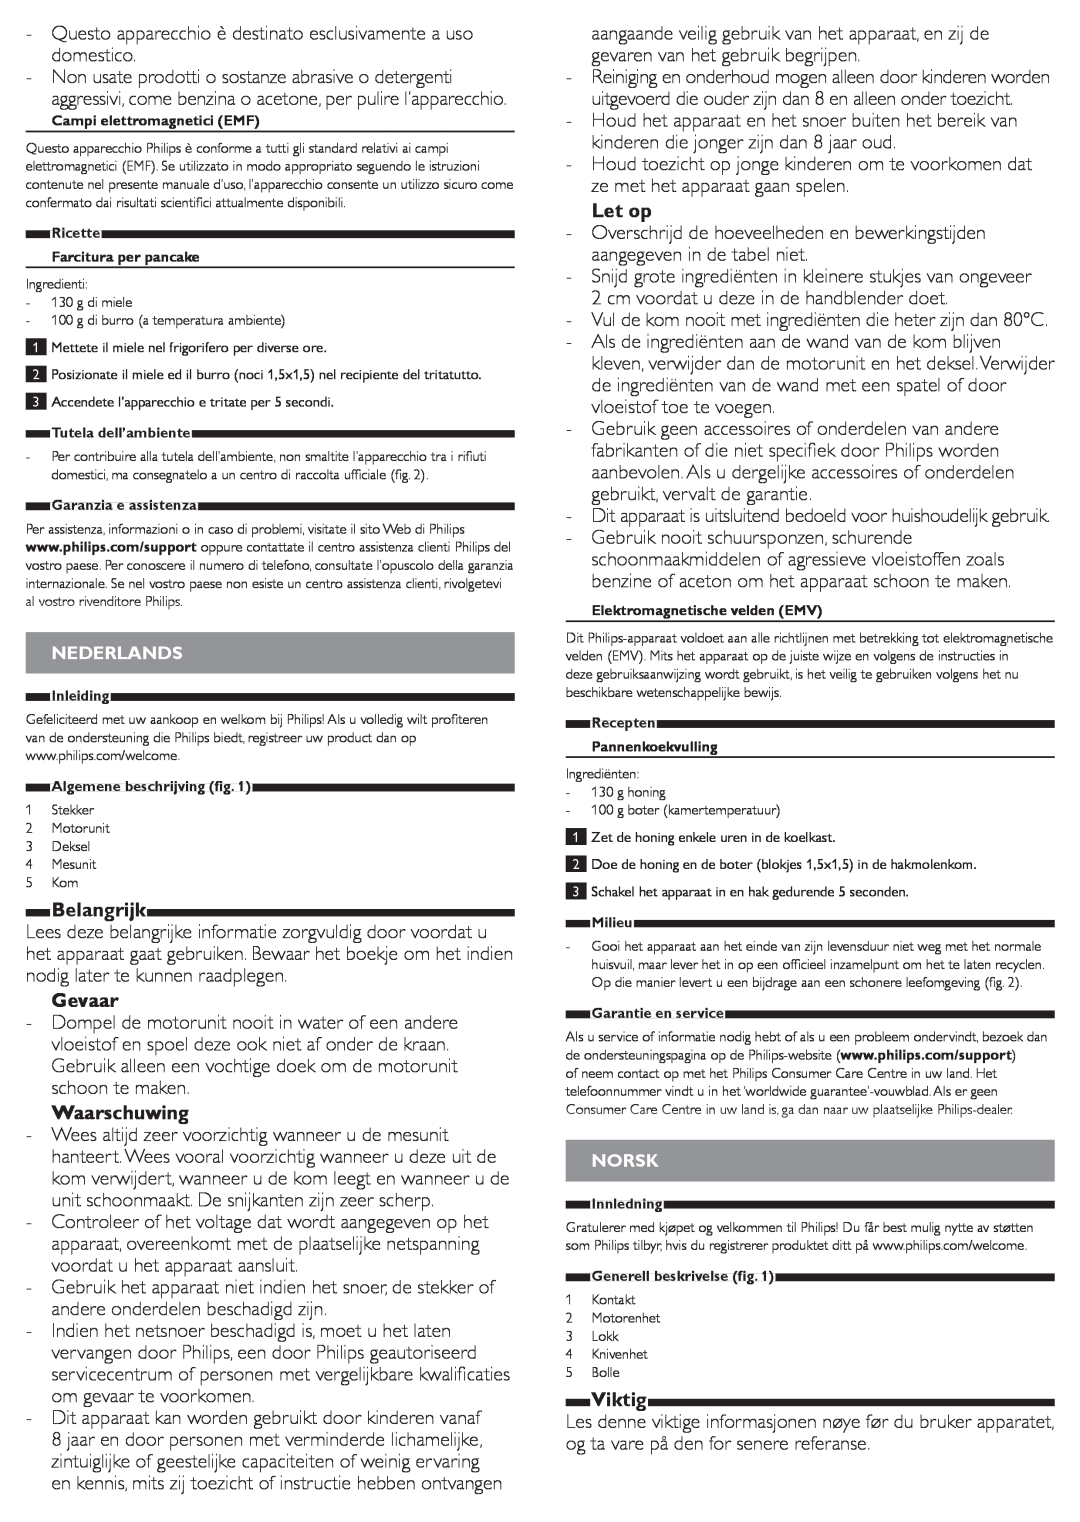 Philips HR1393 user manual Belangrijk, Gevaar, Waarschuwing, Let op, Viktig 